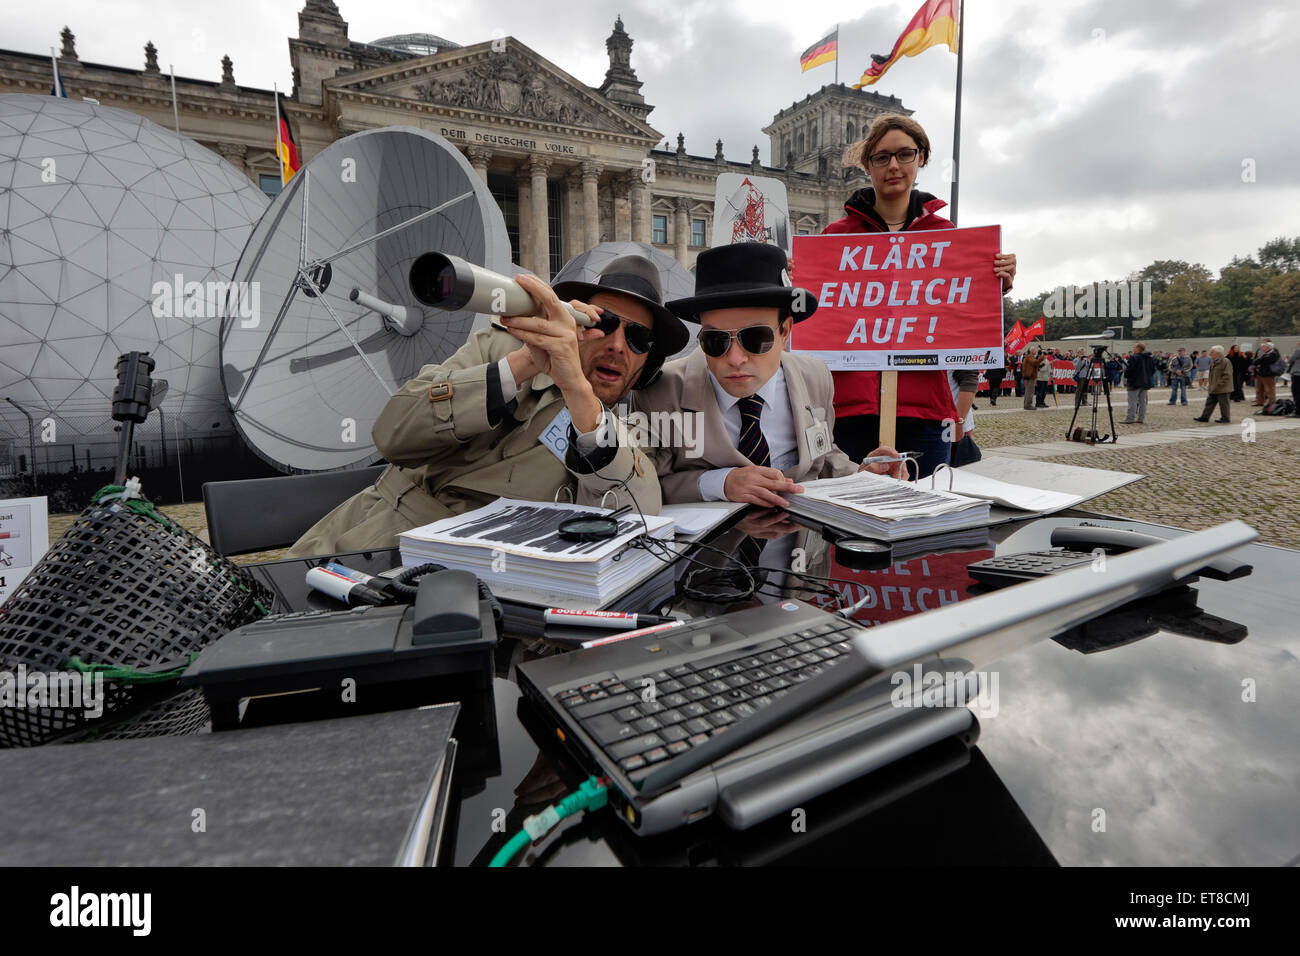 Berlin, Allemagne, de protestation contre l'espionnage BND / NSA Banque D'Images